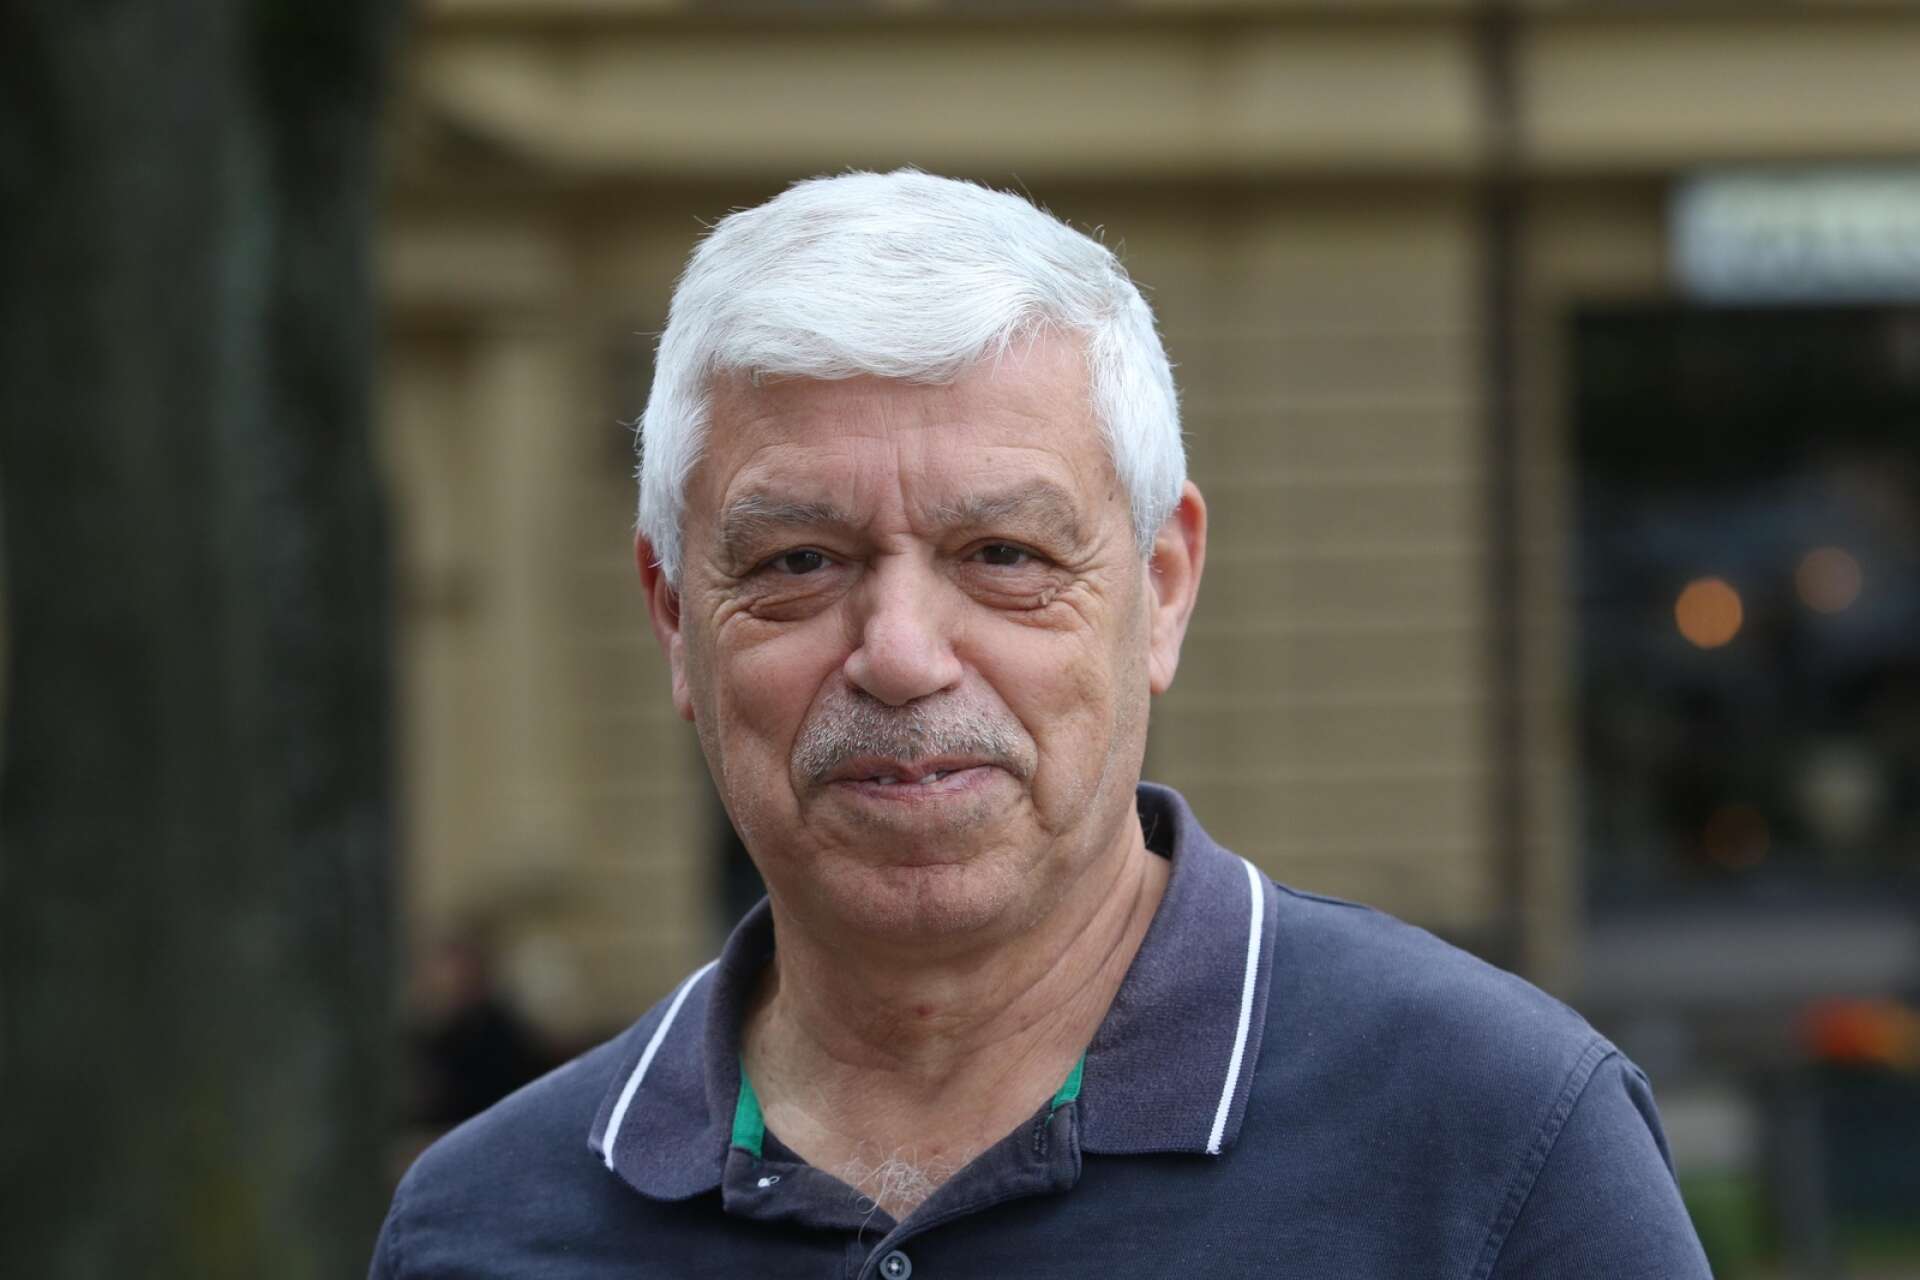 Hassan Alkharat, 68, Mariestad